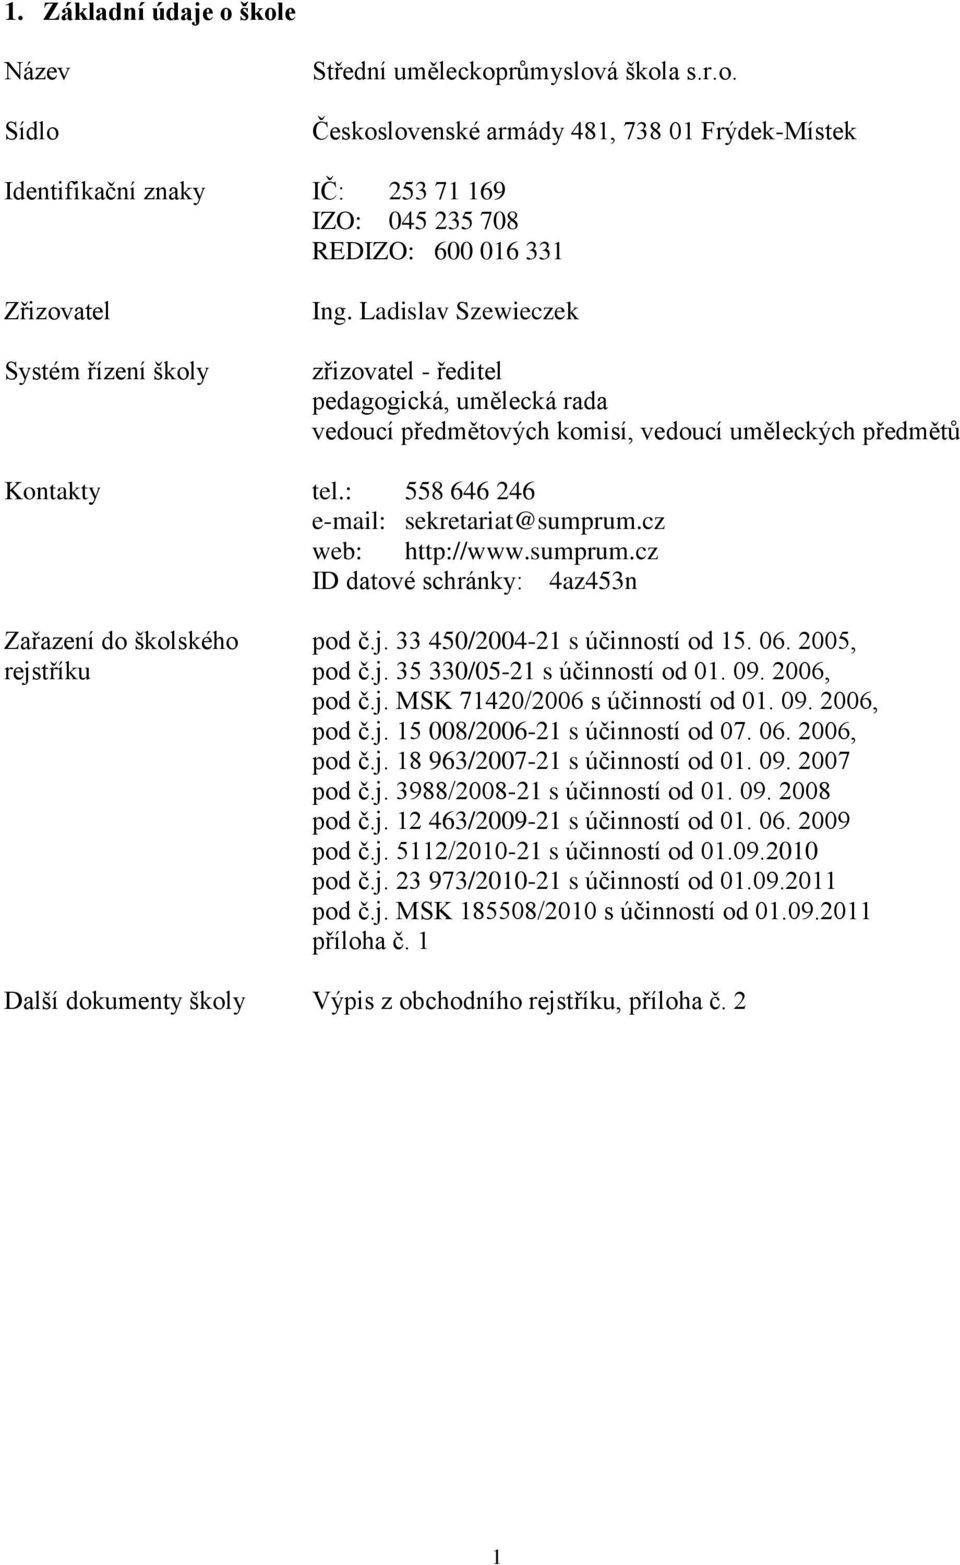 sumprum.cz ID datové schránky: 4az453n Zařazení do školského pod č.j. 33 450/2004-21 s účinností od 15. 06. 2005, rejstříku pod č.j. 35 330/05-21 s účinností od 01. 09. 2006, pod č.j. MSK 71420/2006 s účinností od 01.